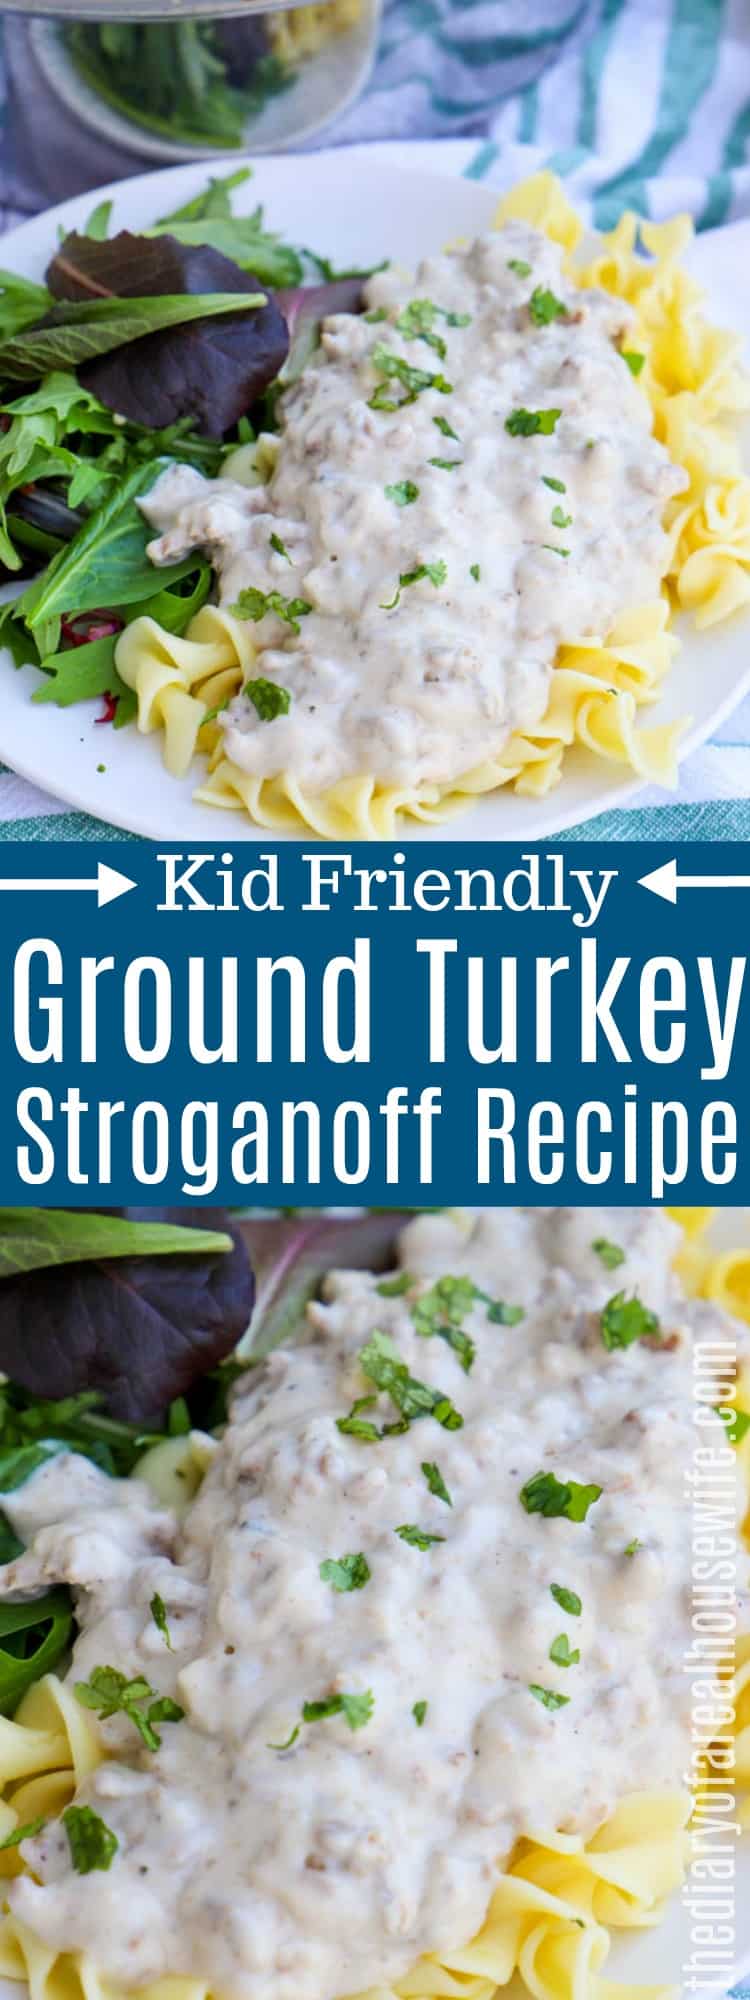 Ground Turkey Stroganoff